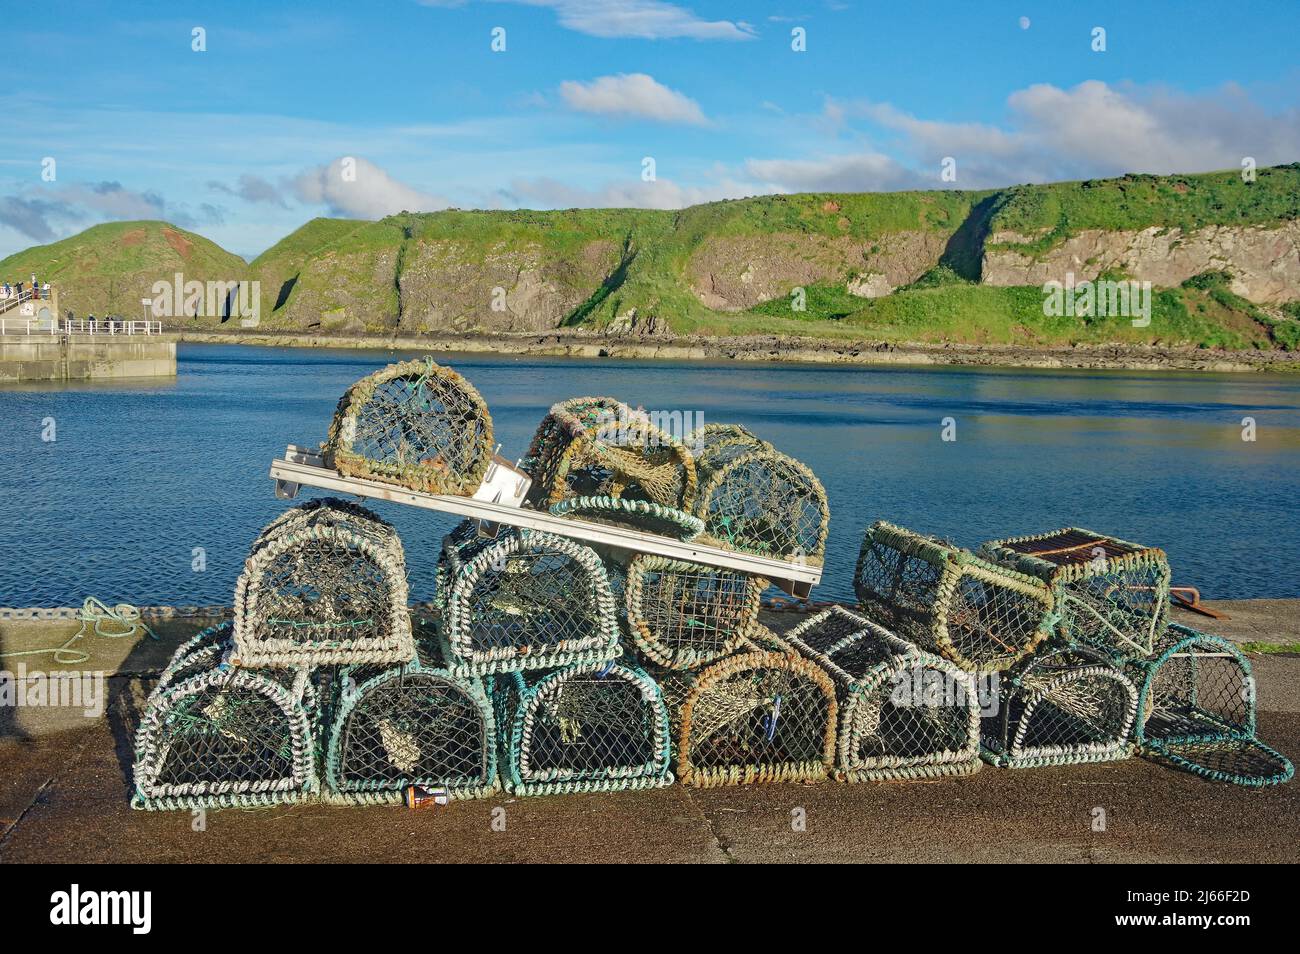 Hummerkaefige liegen im Hafen von Stonehaven, Schottland, Grossbritannien Stockfoto